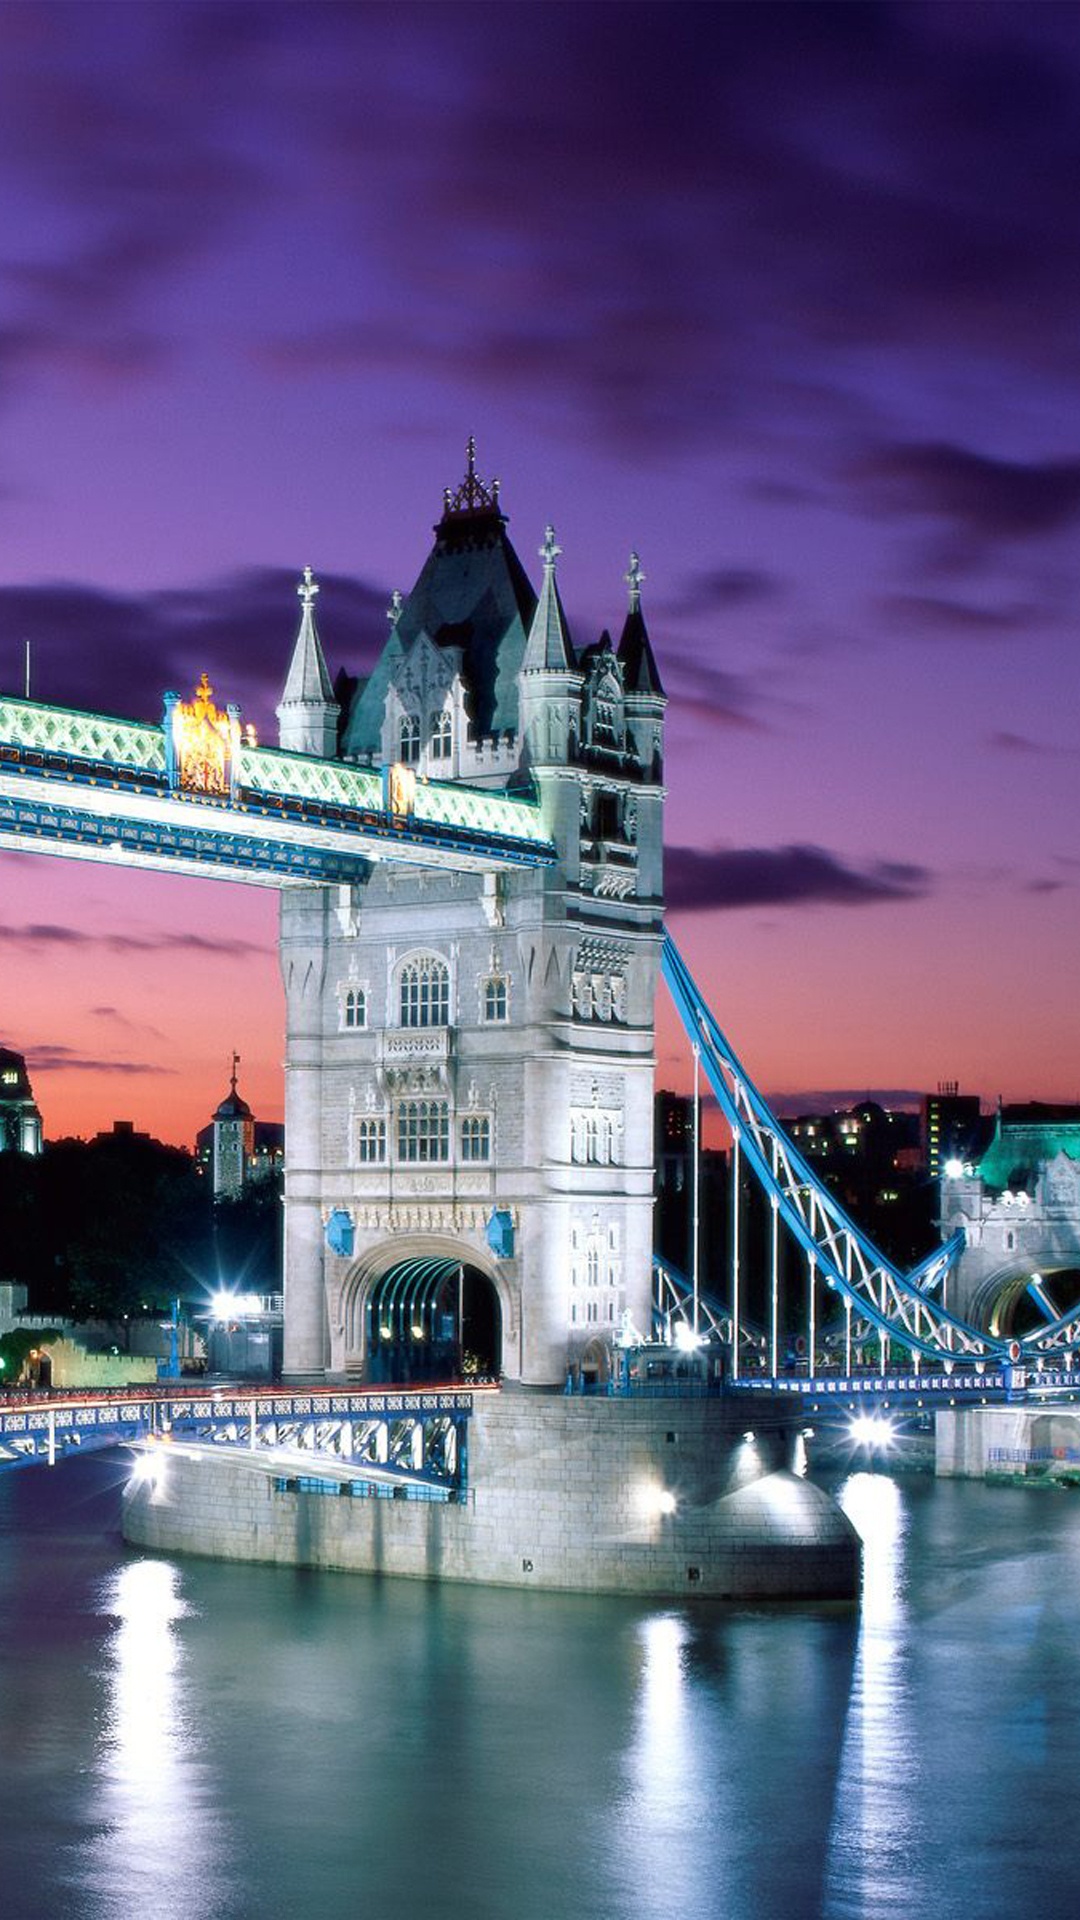 塔桥, 泰晤士河, 伦敦塔, 伦敦桥, 里程碑 壁纸 1080x1920 允许